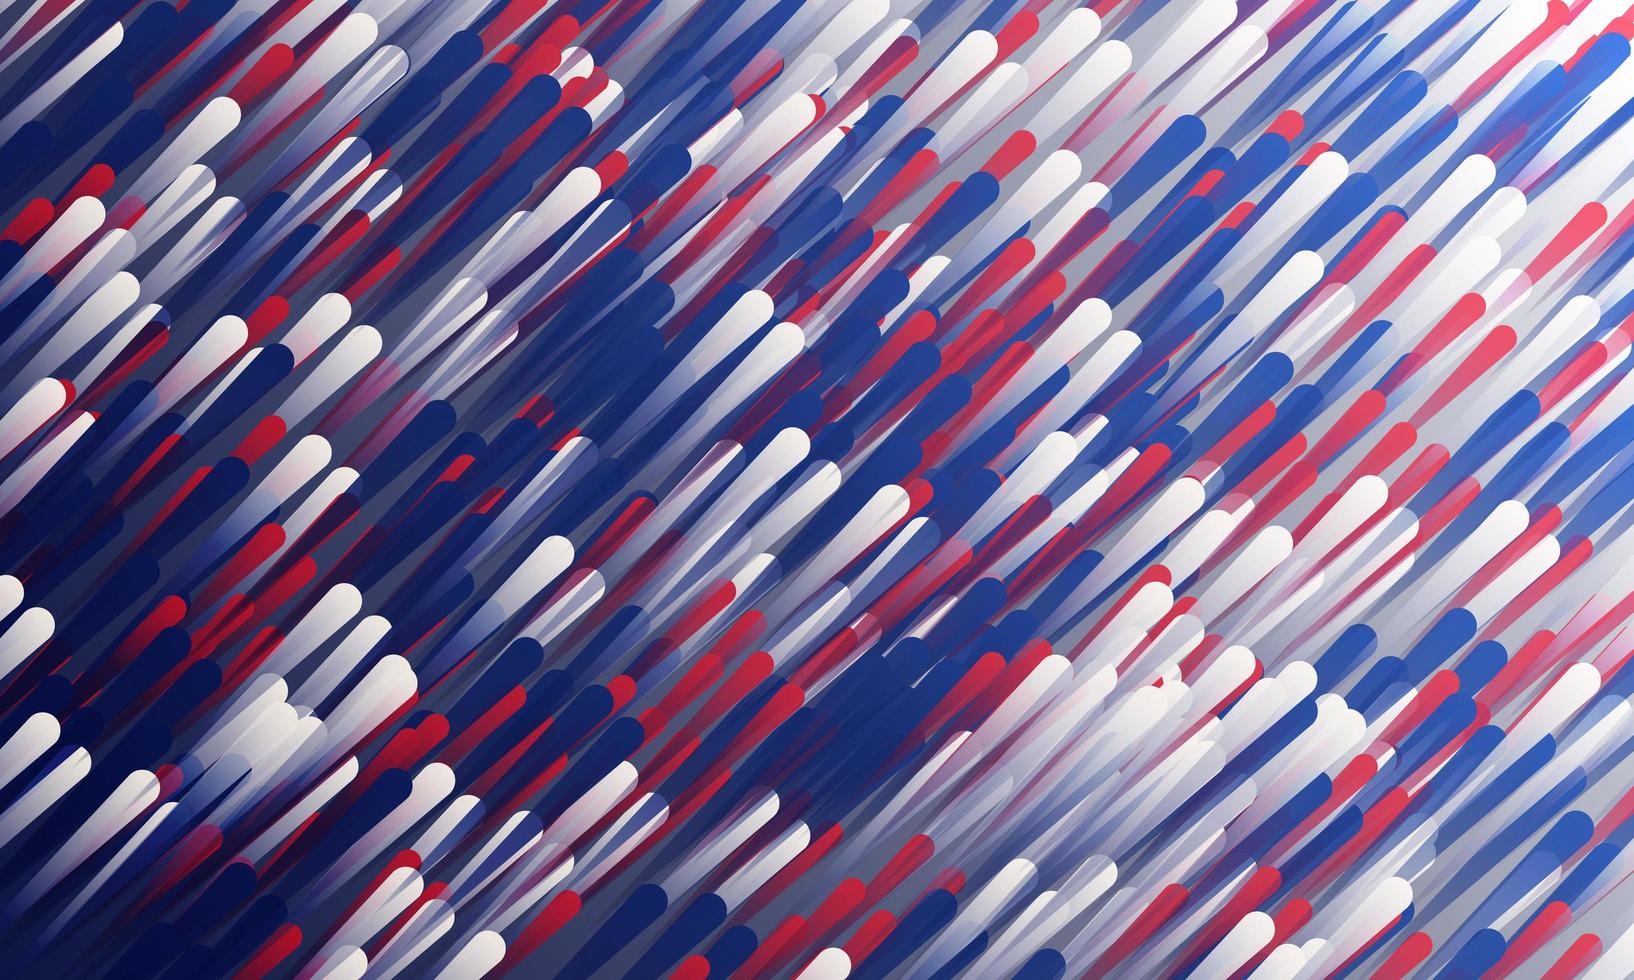 rot, weiß und blau abgewinkelte dynamische Linien desgin vektor